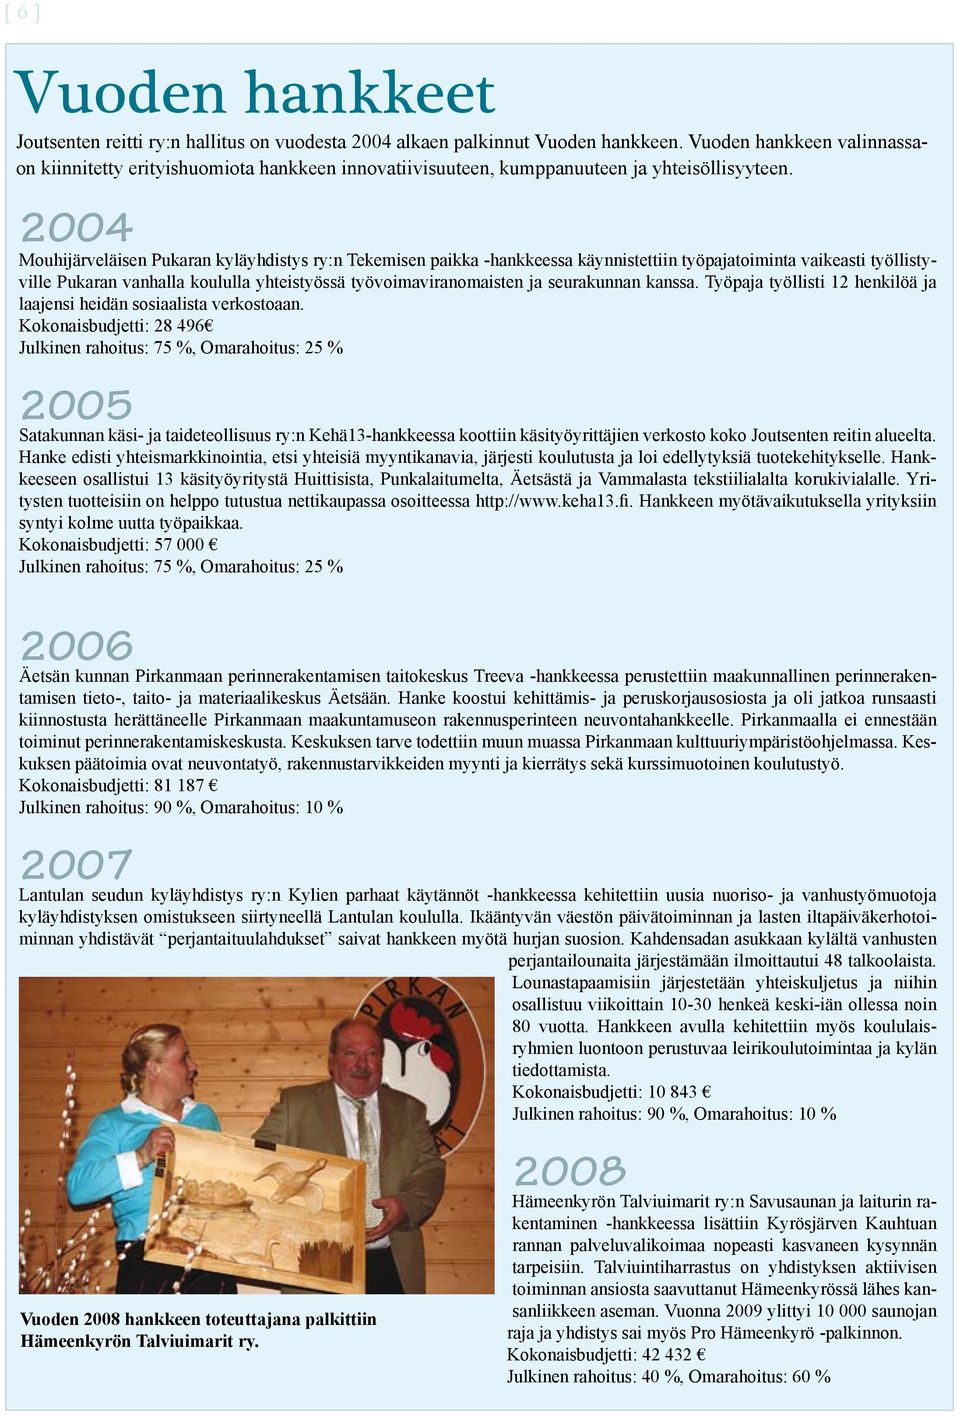 2004 Mouhijärveläisen Pukaran kyläyhdistys ry:n Tekemisen paikka -hankkeessa käynnistettiin työpajatoiminta vaikeasti työllistyville Pukaran vanhalla koululla yhteistyössä työvoimaviranomaisten ja